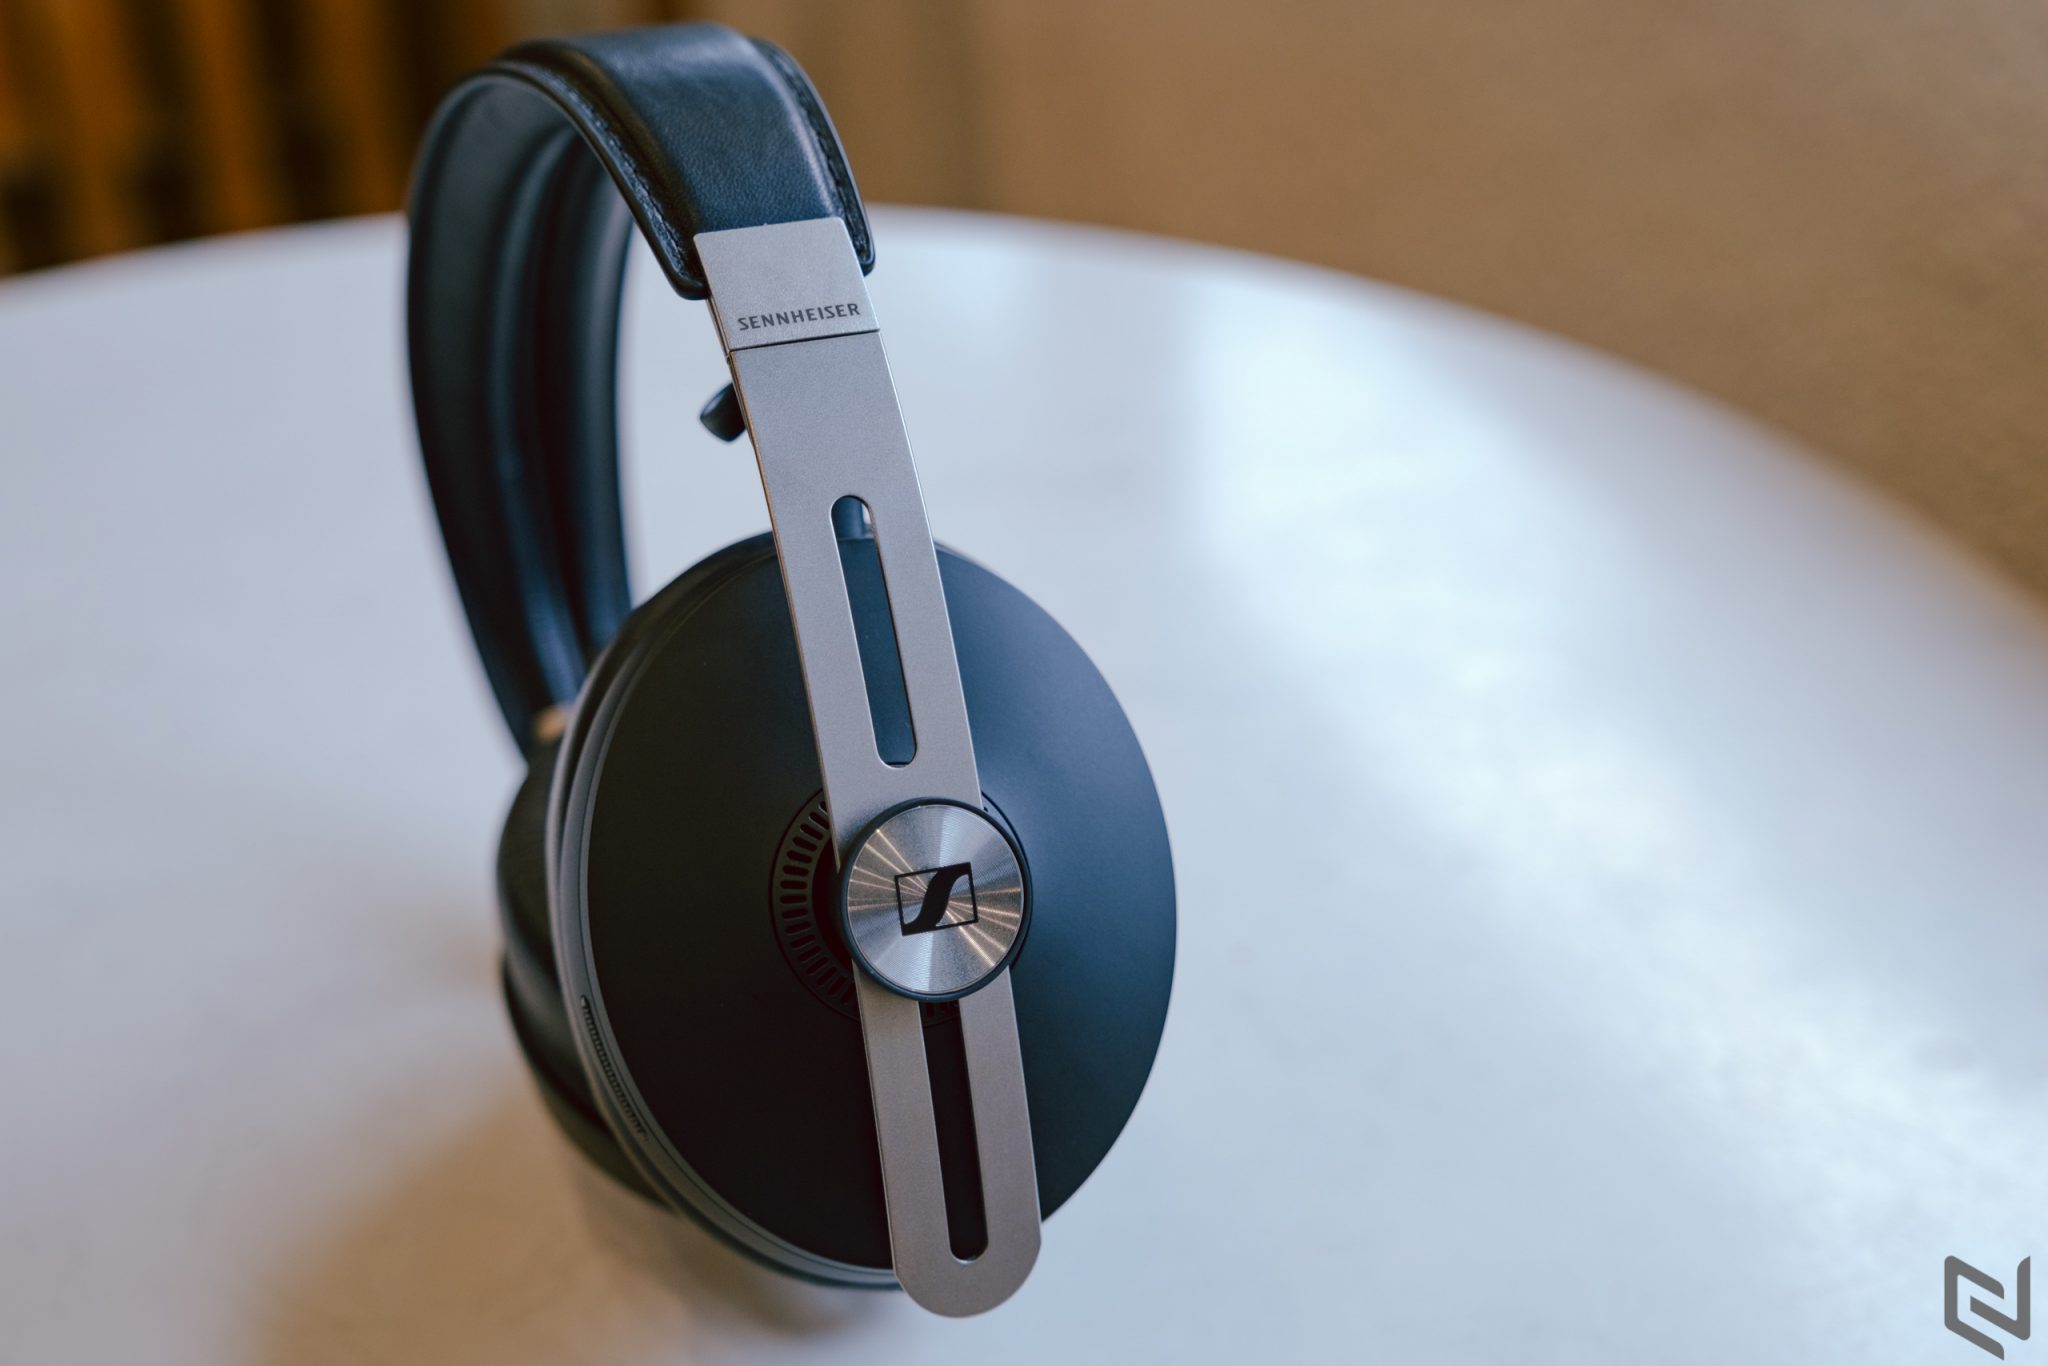 Đánh giá tai nghe Sennheiser Momentum Wireless: Xứng đáng với mức giá gần 11 triệu đồng